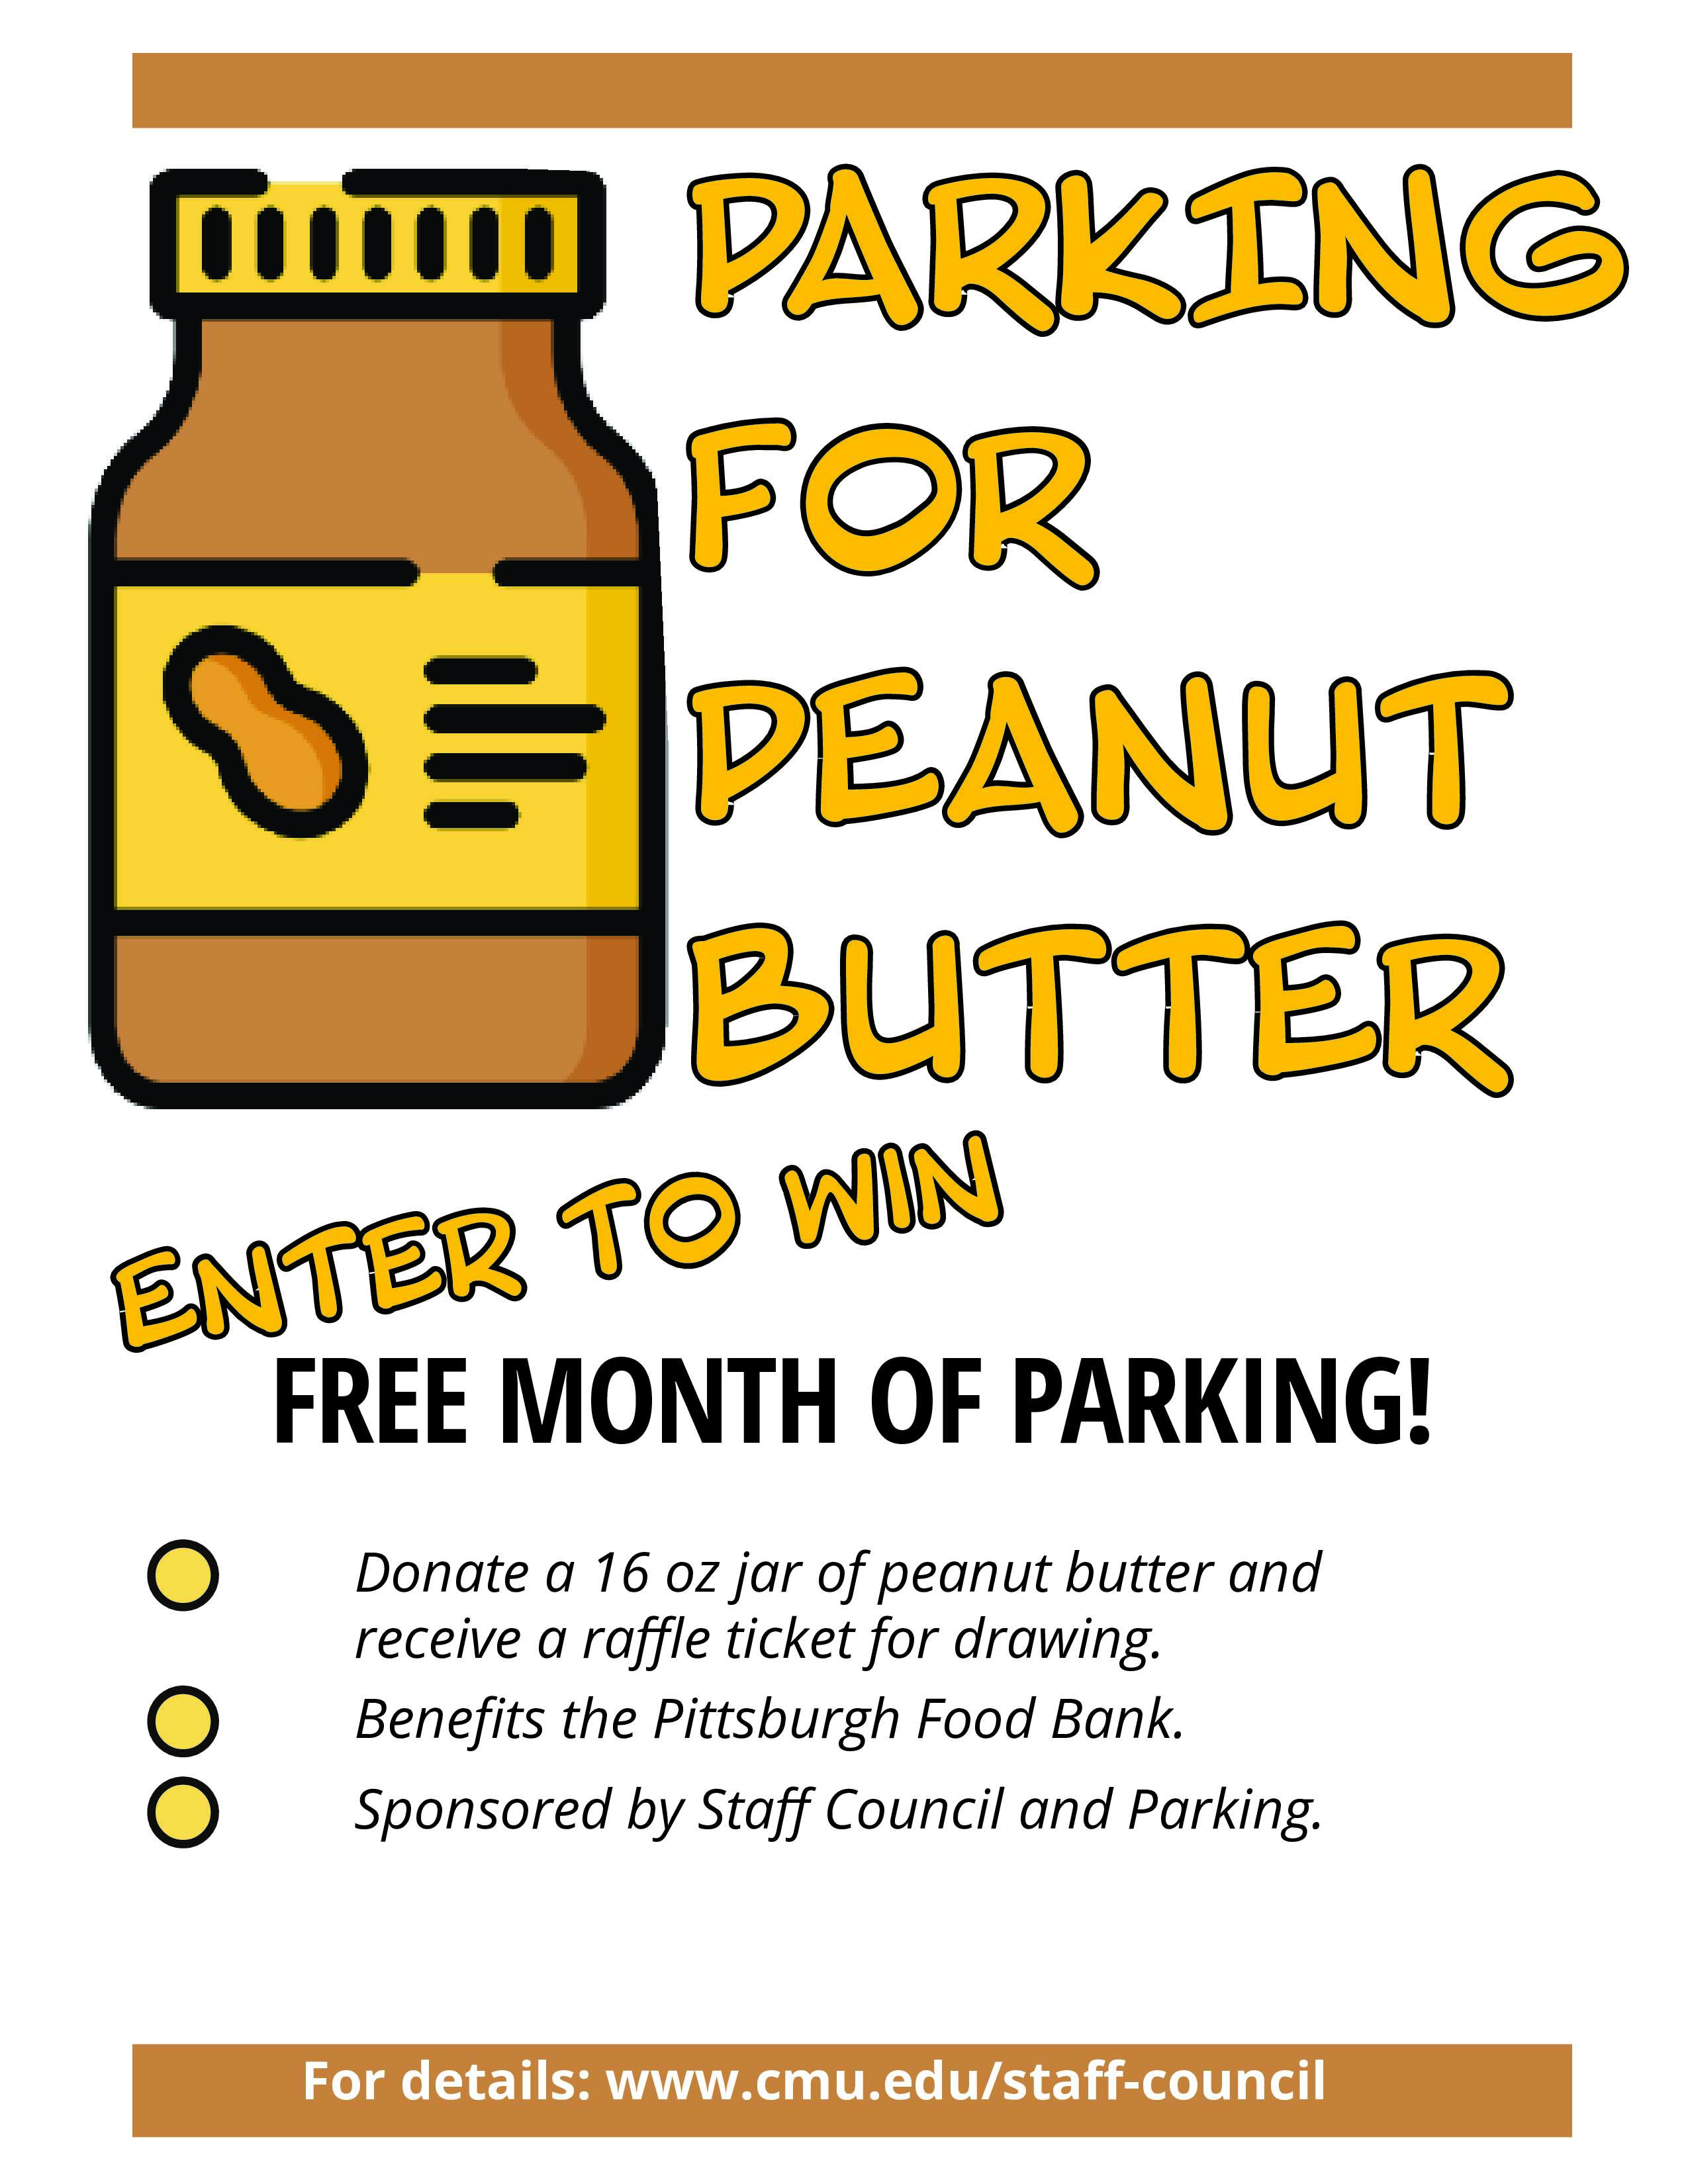 peanut butter parking